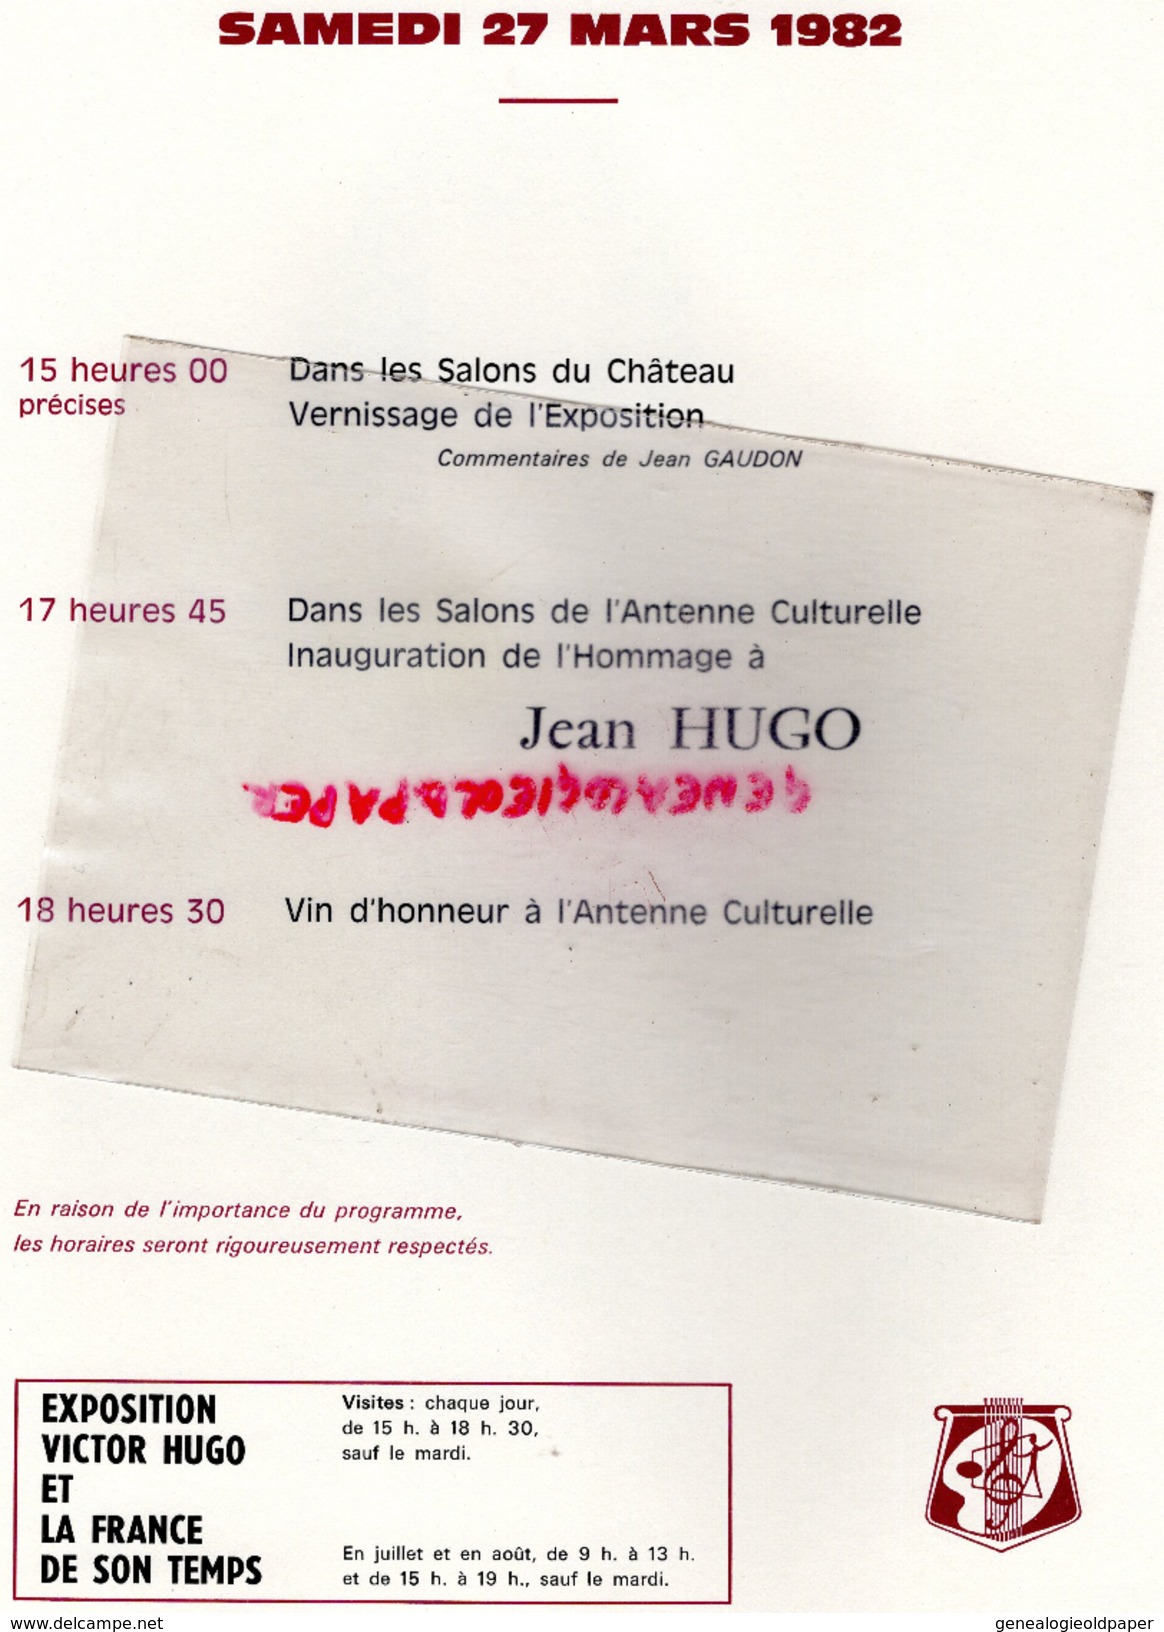 87- ROCHECHOUART - PLAQUETTE VICTOR HUGO ET LA FRANCE DE SON TEMPS- 27 MARS 1982 AU CHATEAU- JACK LANG-JACQUES GERARD - Programme